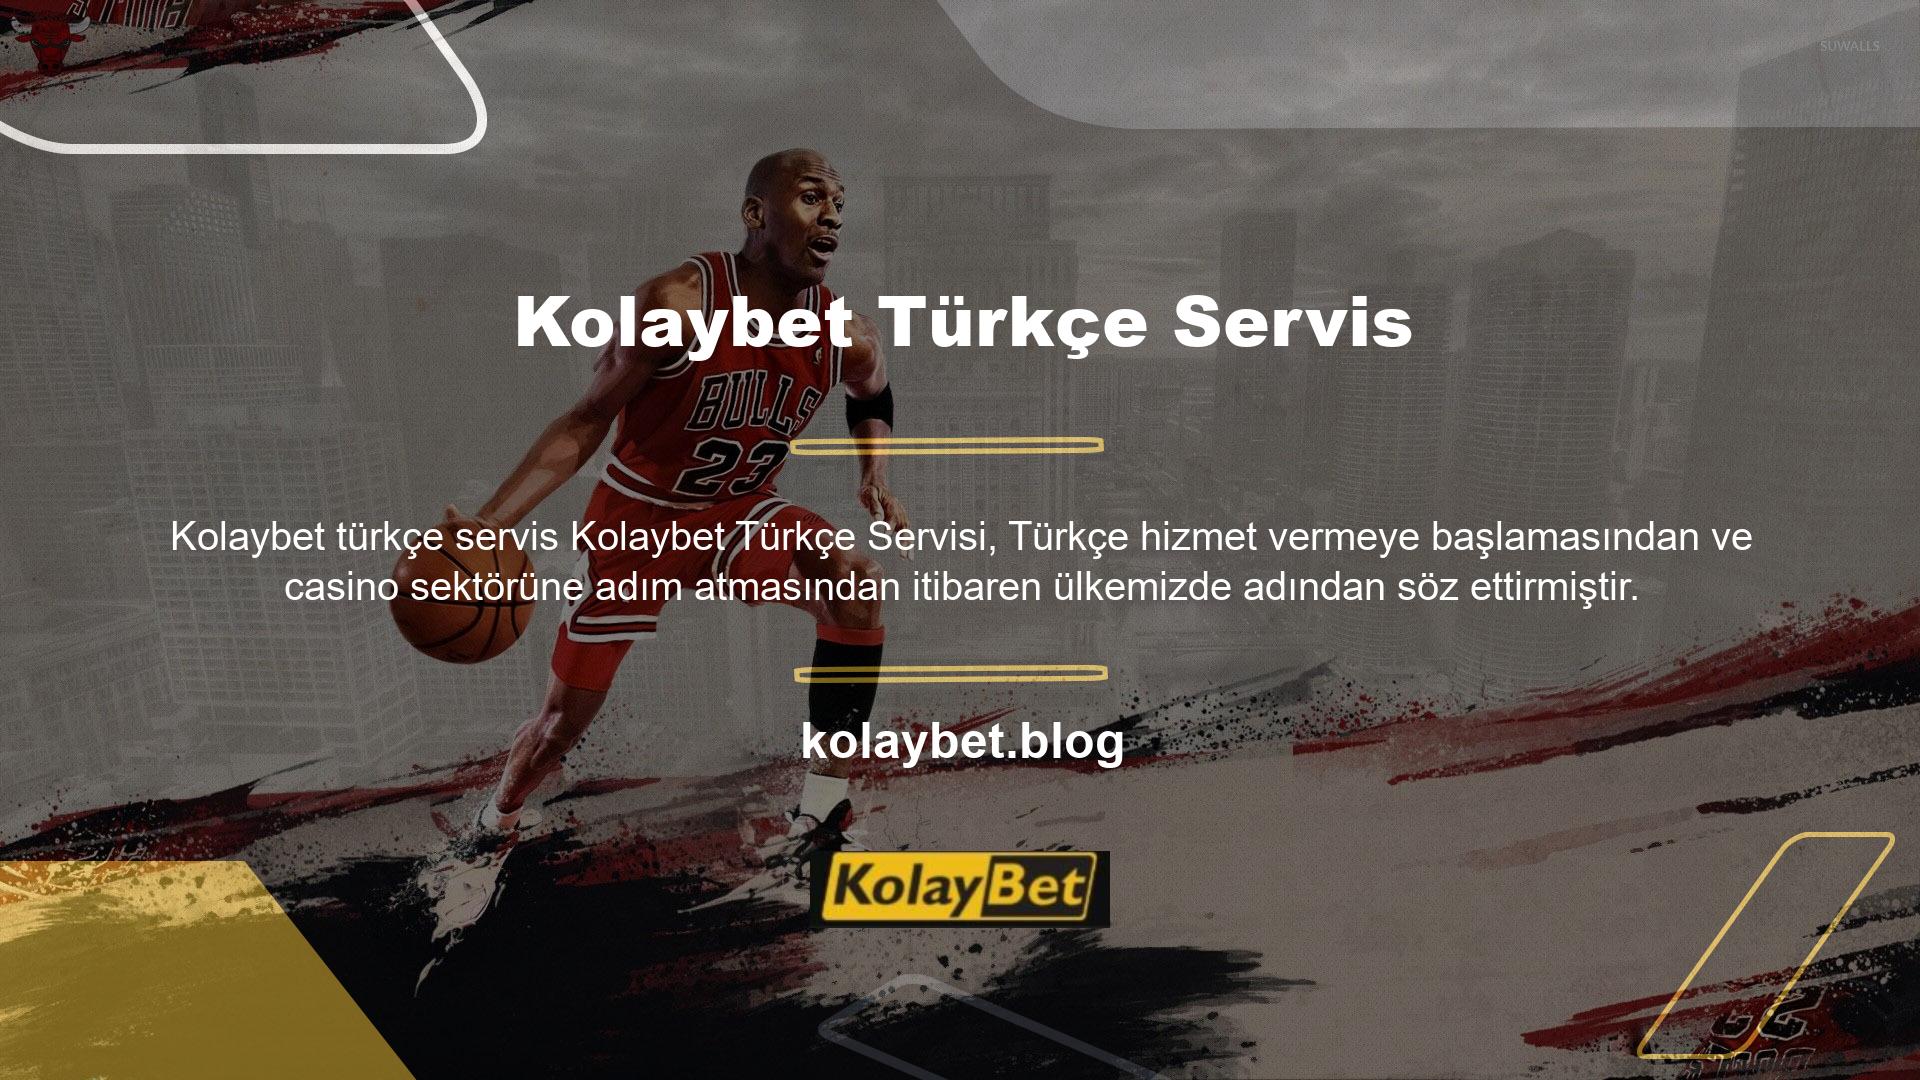 Kolaybet, Türk casino sitesi olarak rakiplerine göre daha fazla üyeye sahiptir